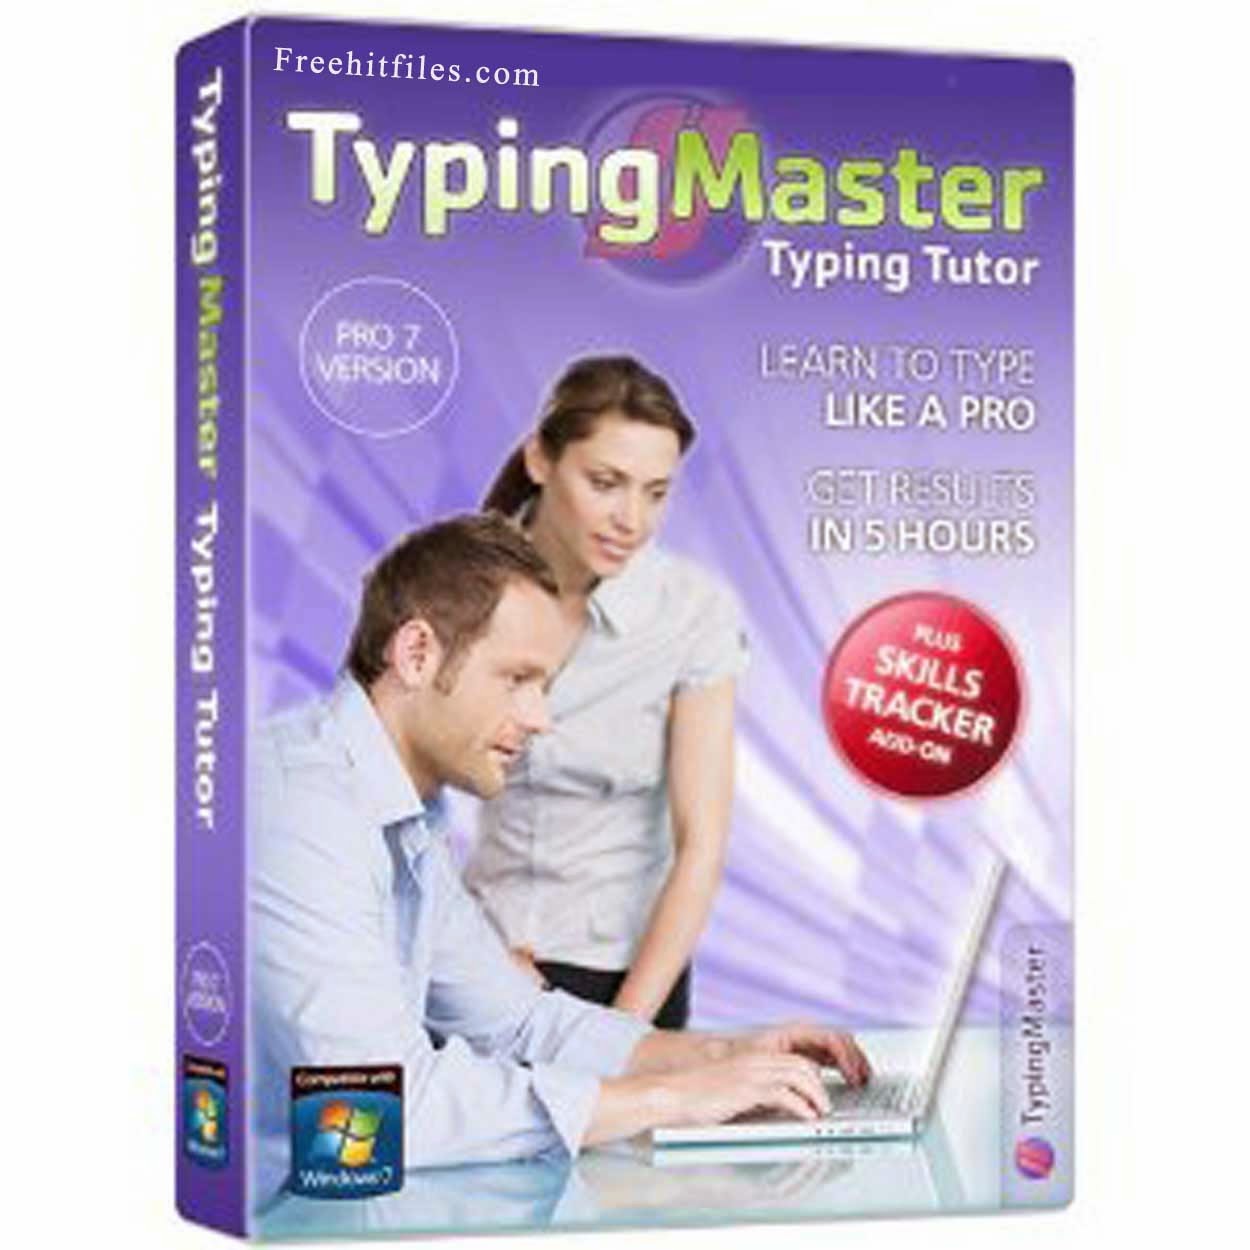 Typingmaster Pro Full Version